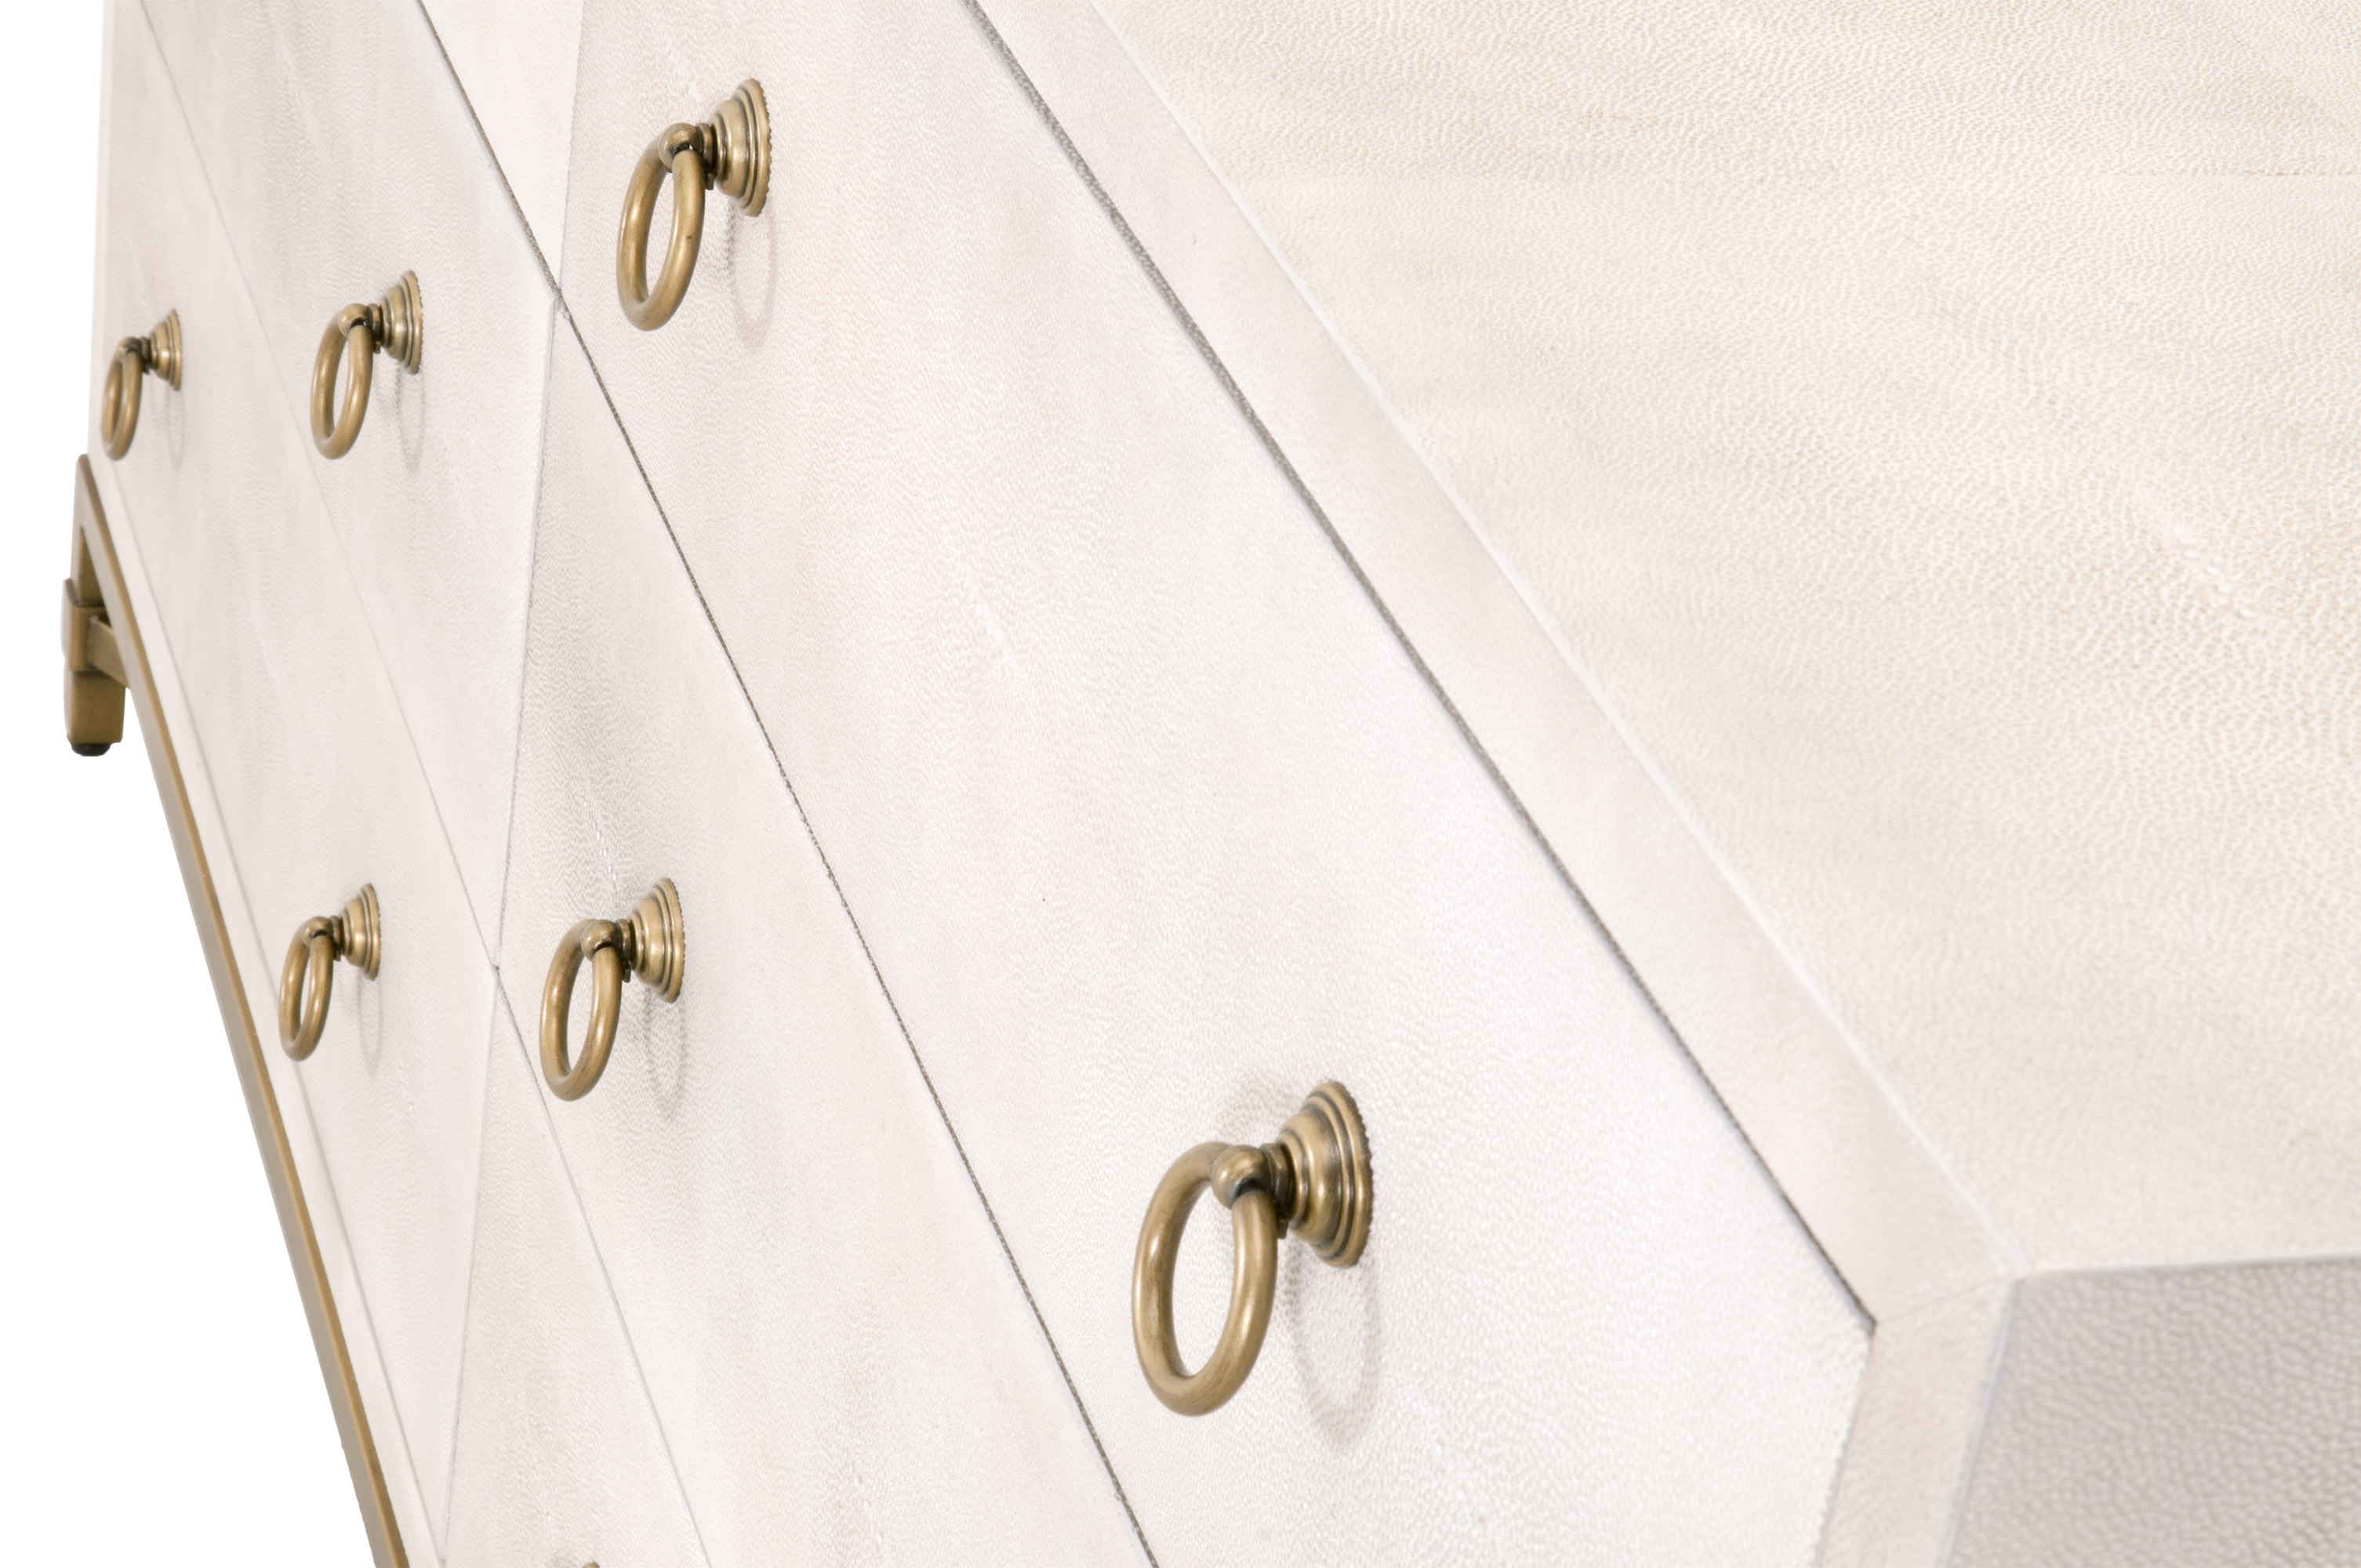 Strand Shagreen 6-Drawer Double Dresser, White & Gold - Image 7